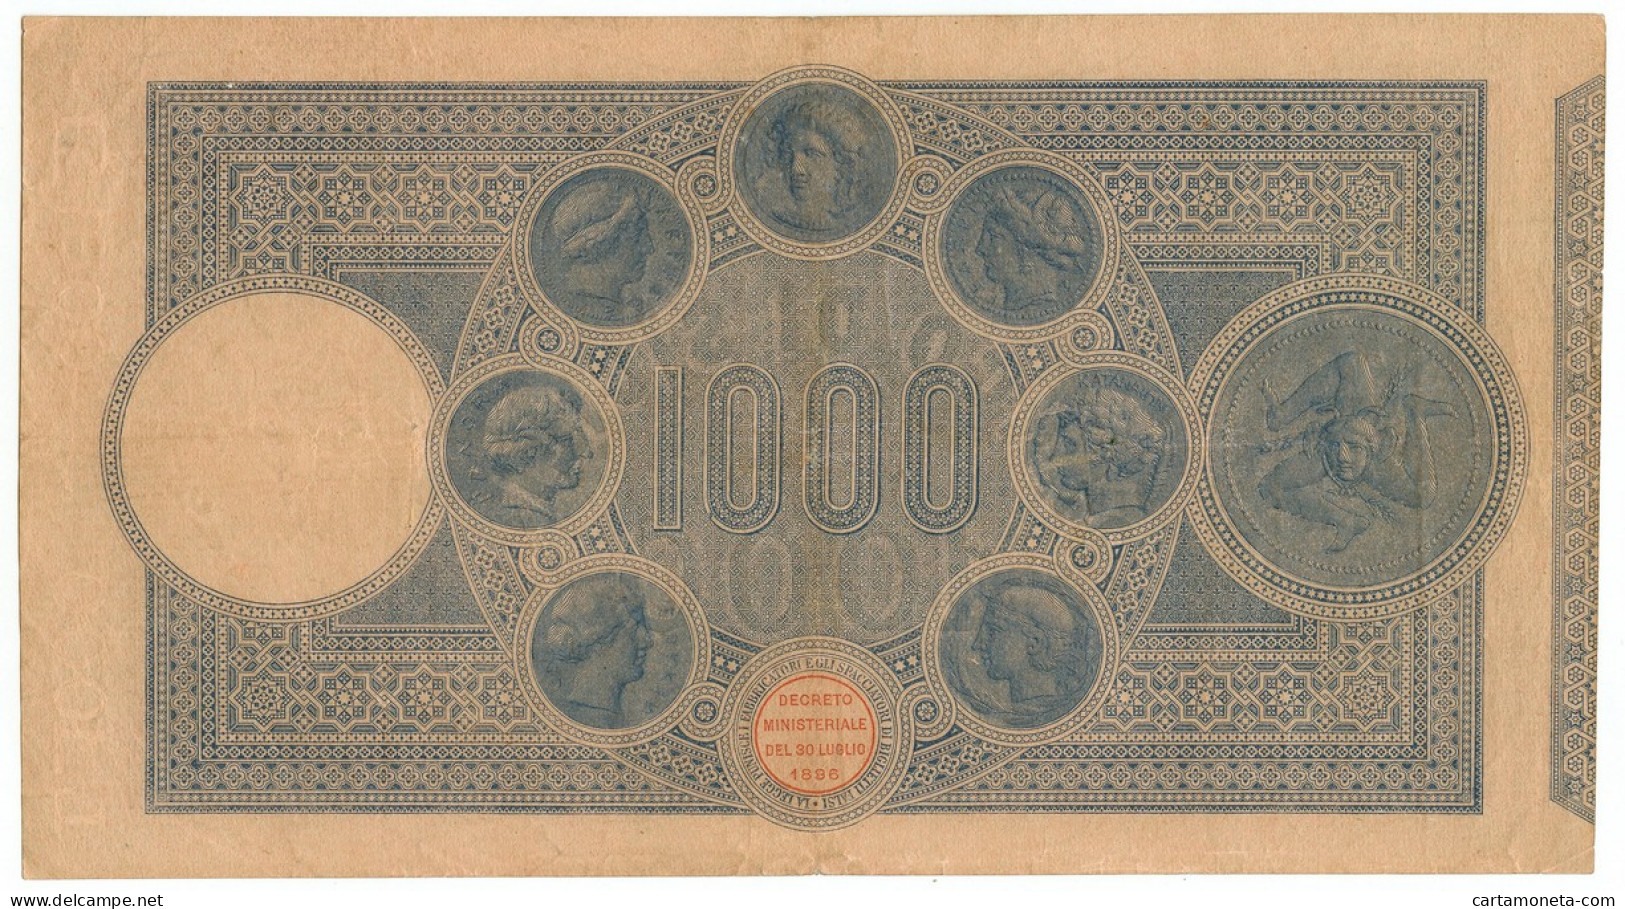 1000 LIRE BANCO DI SICILIA BIGLIETTO AL PORTATORE 30/05/1919 BB/BB+ - Other & Unclassified